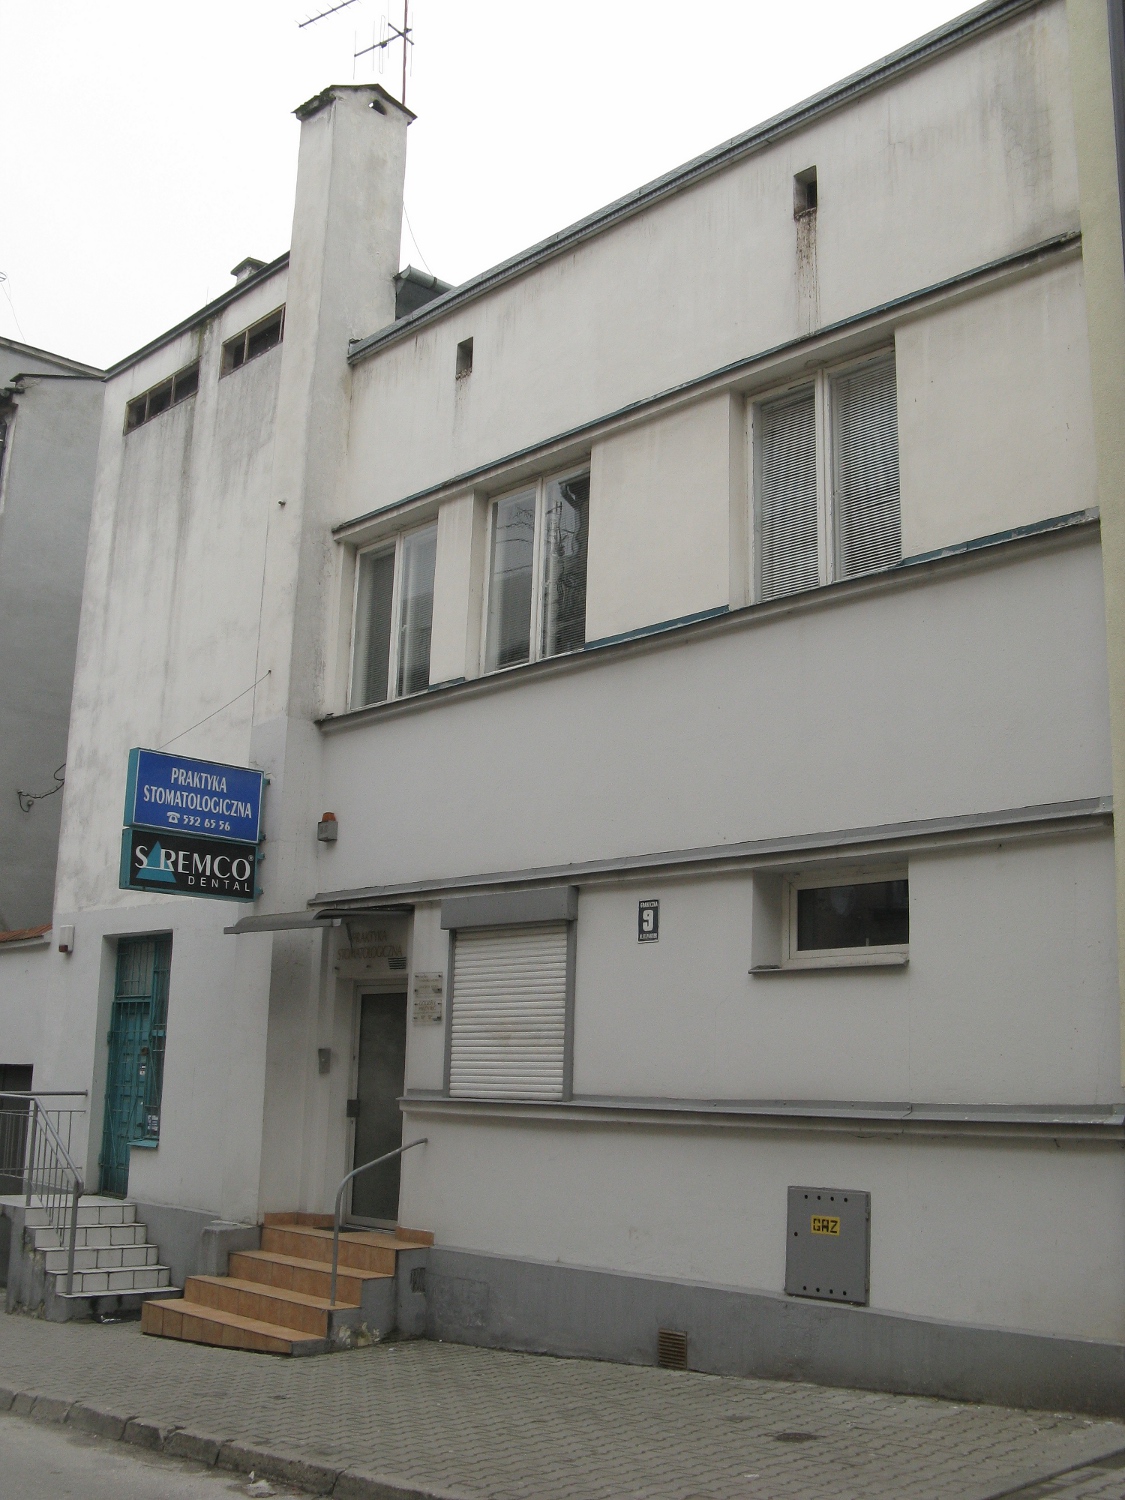 Dom przy ulicy Granicznej 9 w Lublinie, dawna willa ks. Ludwika Zalewskiego